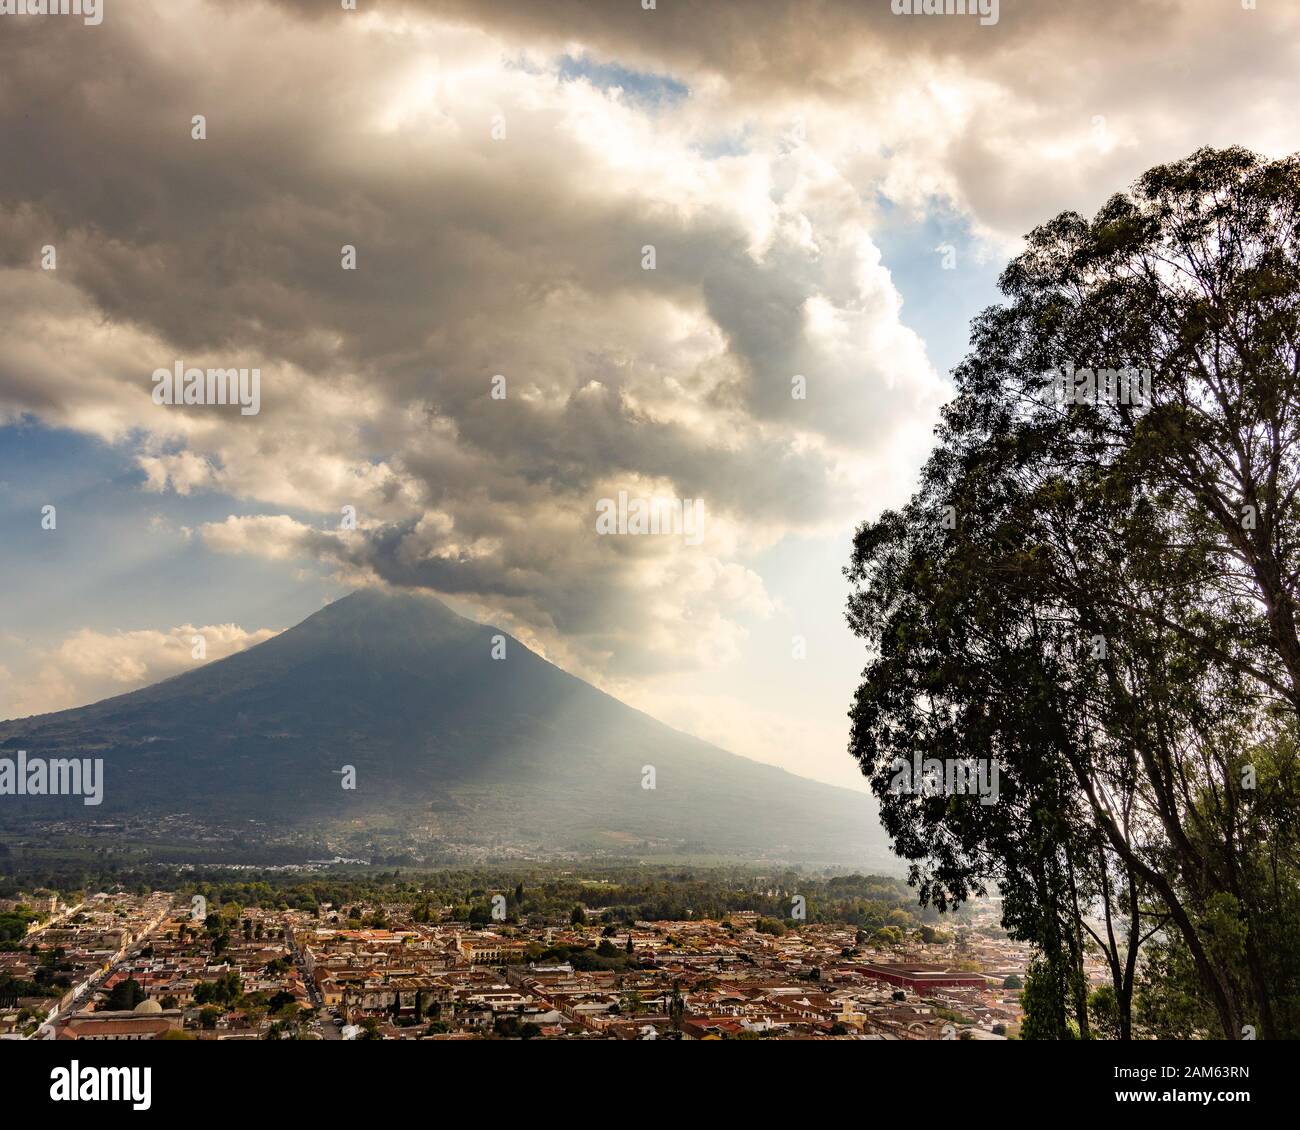 A view of Antigua, Guatemala from Cerro de la Cruz Stock Photo